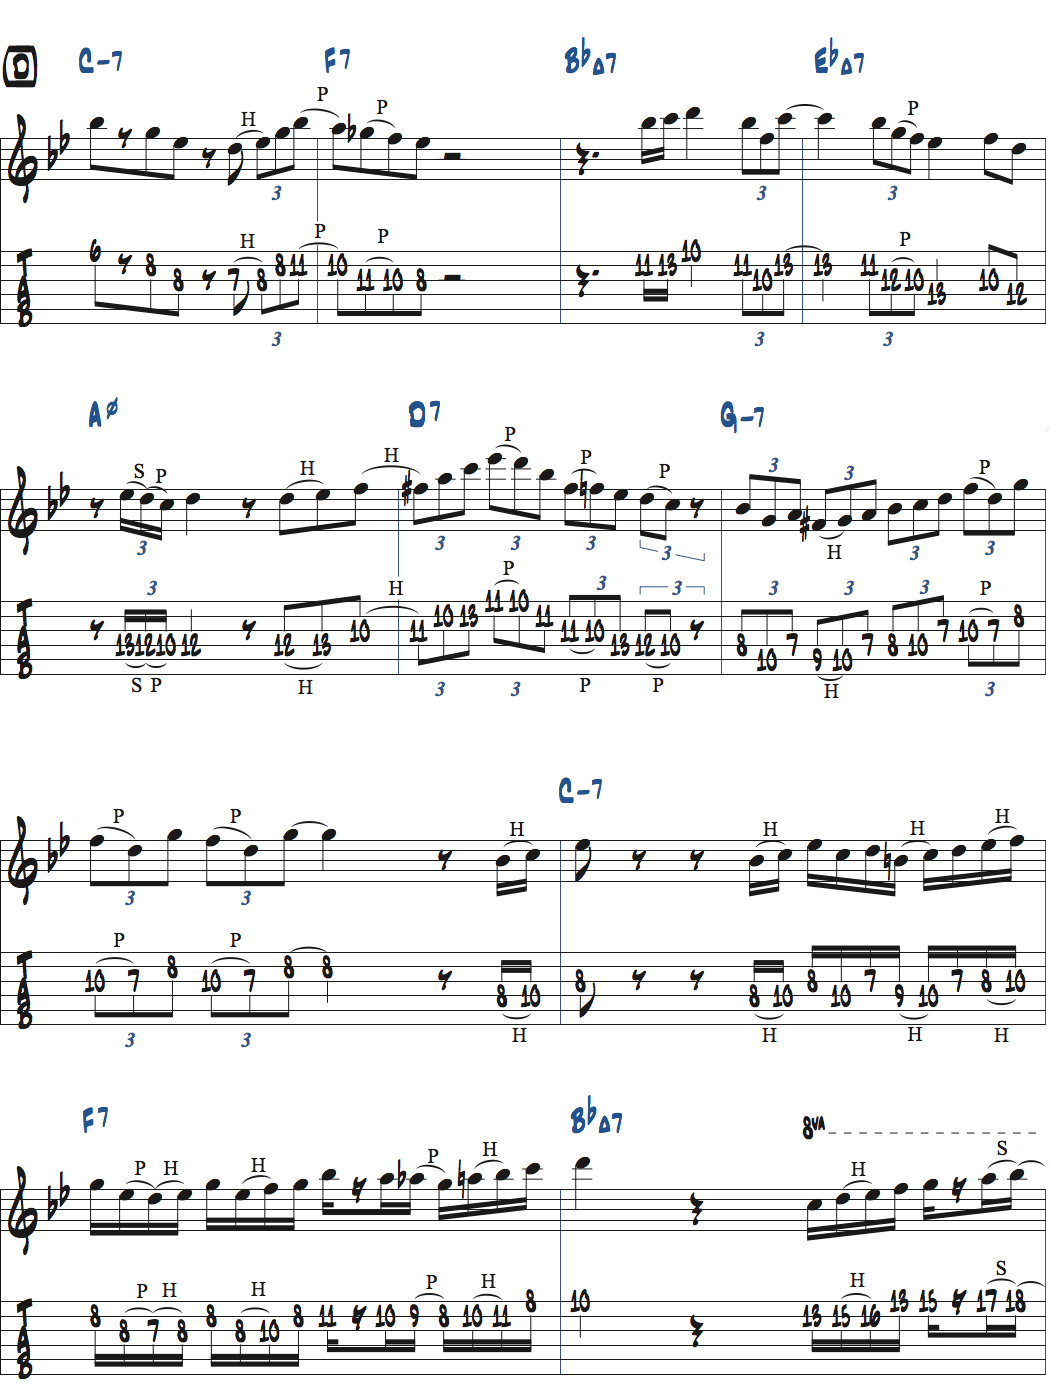 枯葉のアドリブ例楽譜ページ3